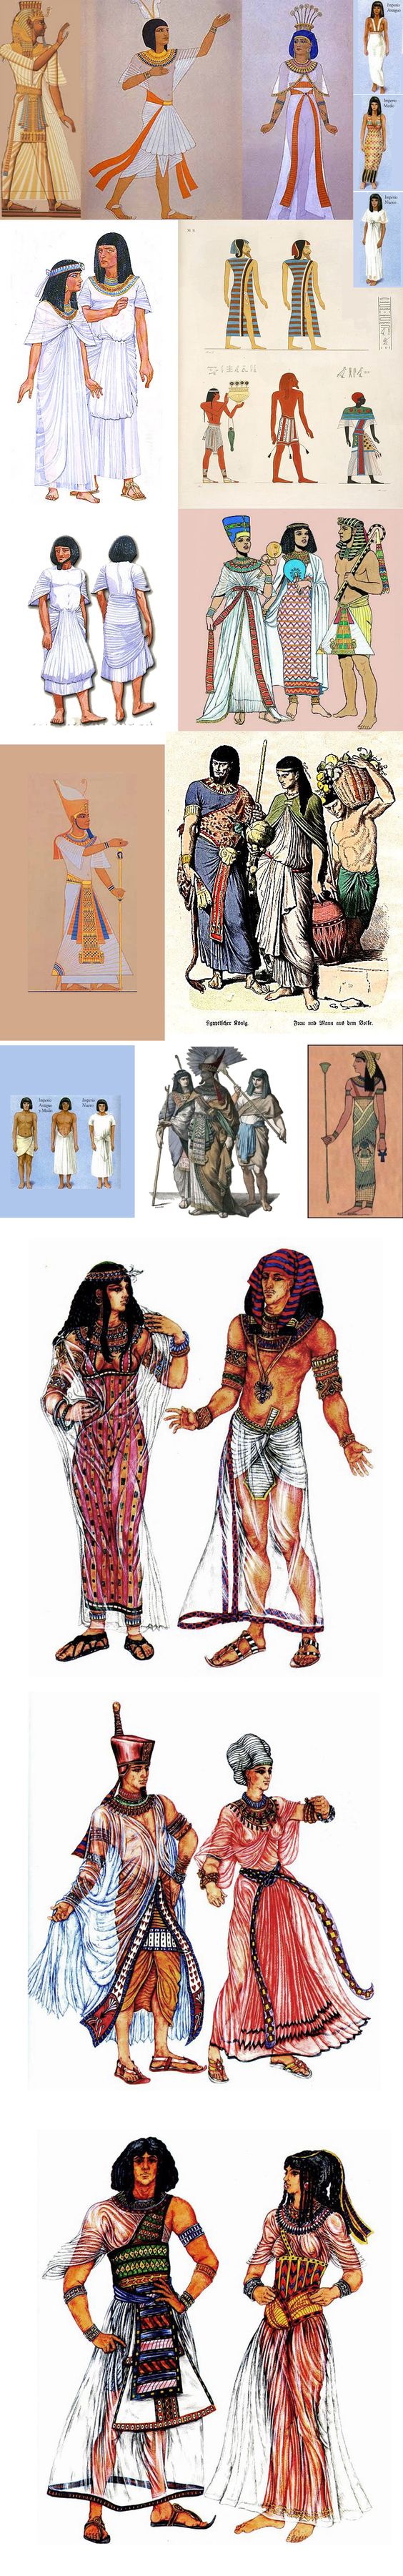 古埃及服饰